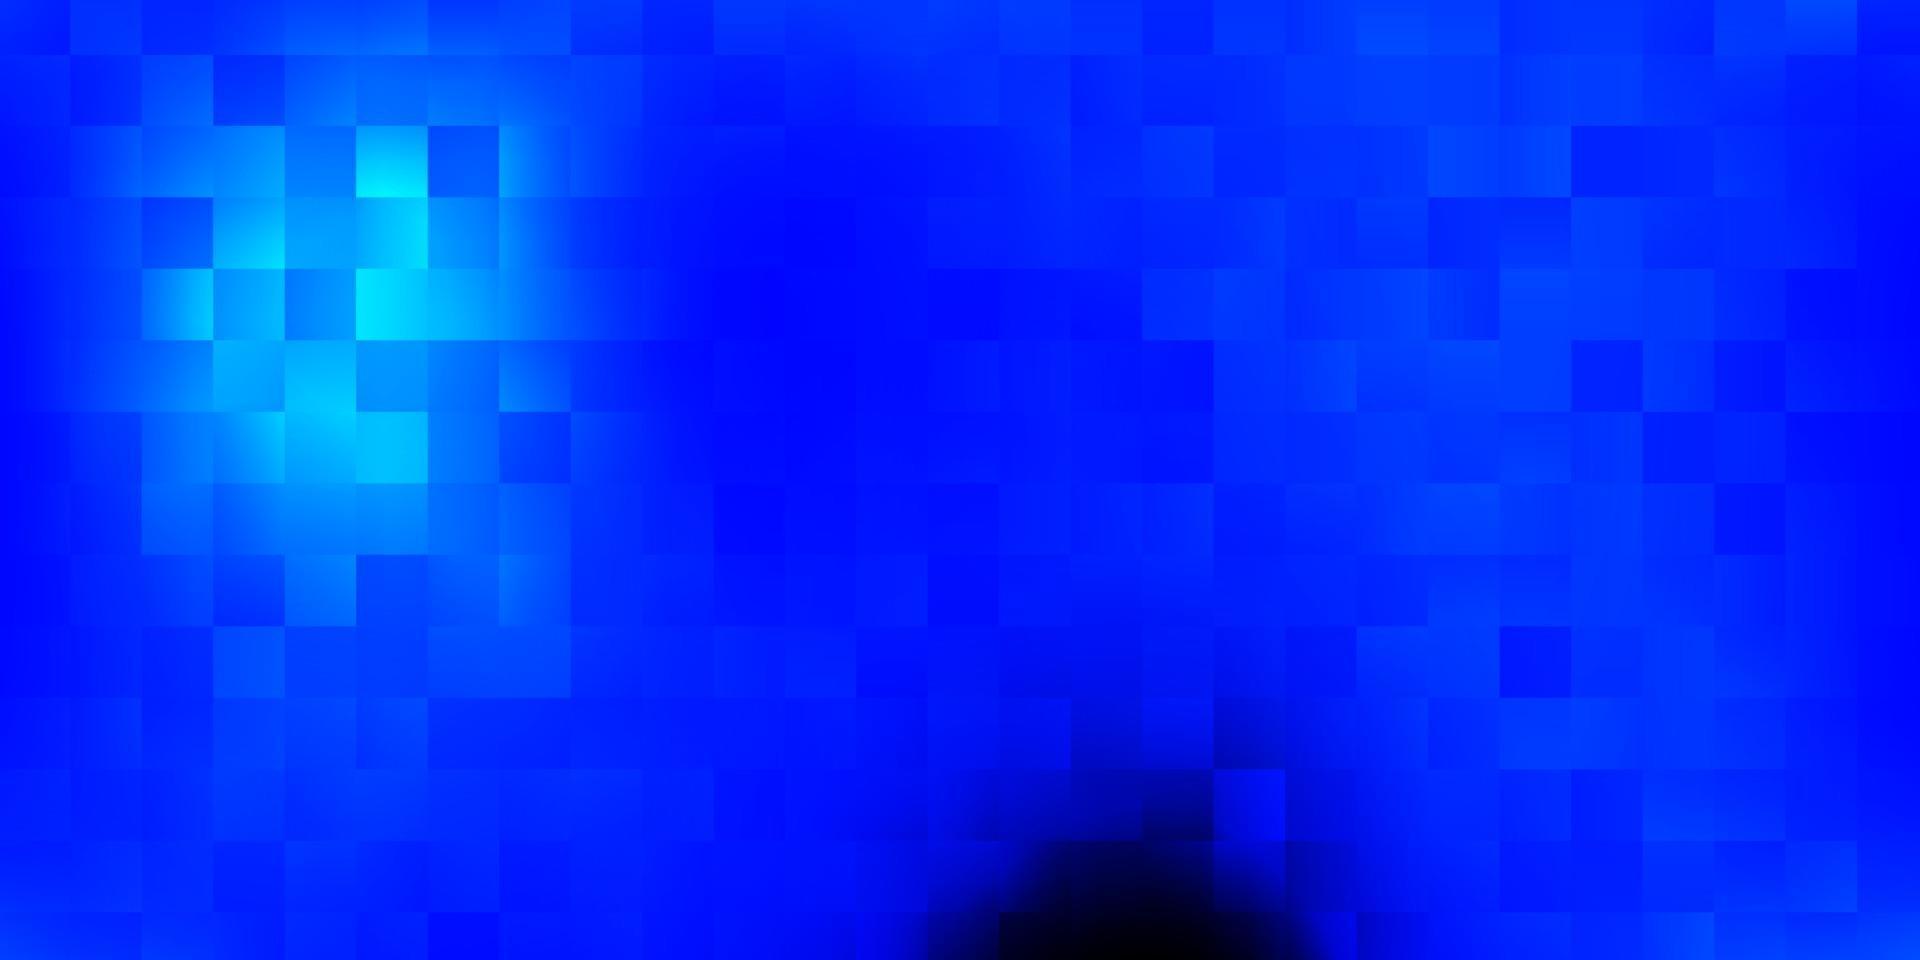 toile de fond de vecteur bleu foncé dans un style rectangulaire.